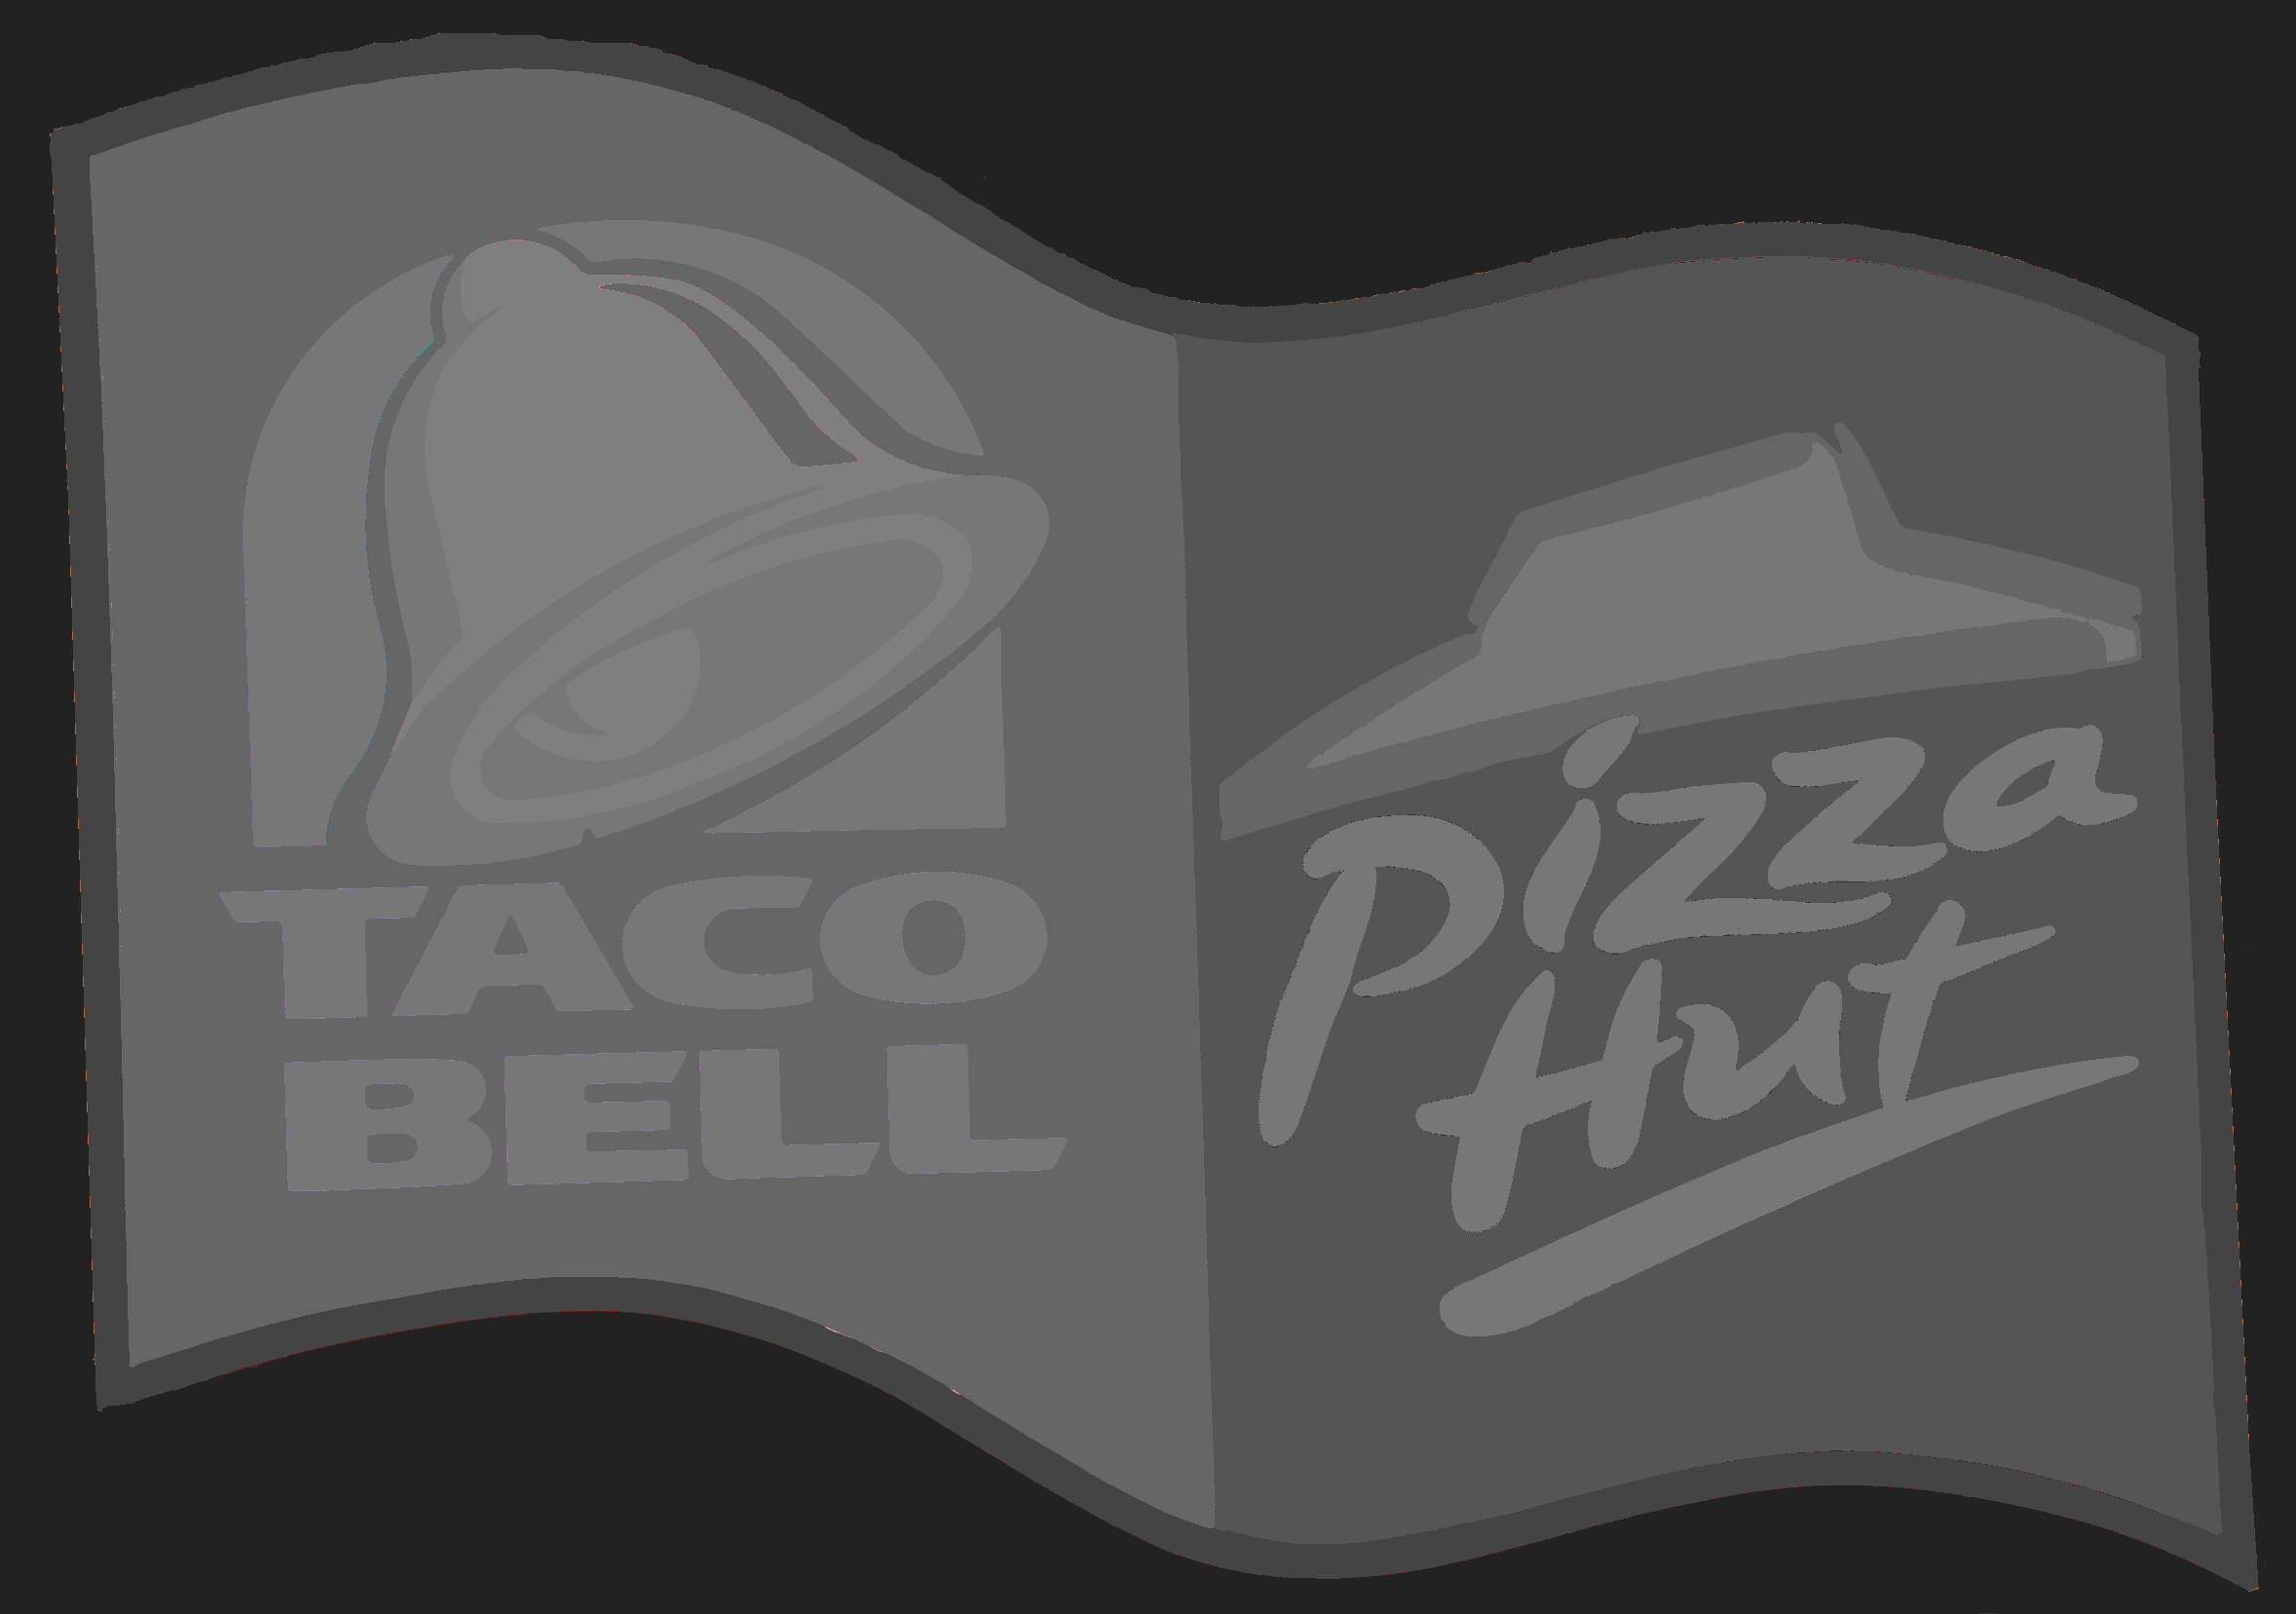 Taco Bell Pizza Hut closeup.png